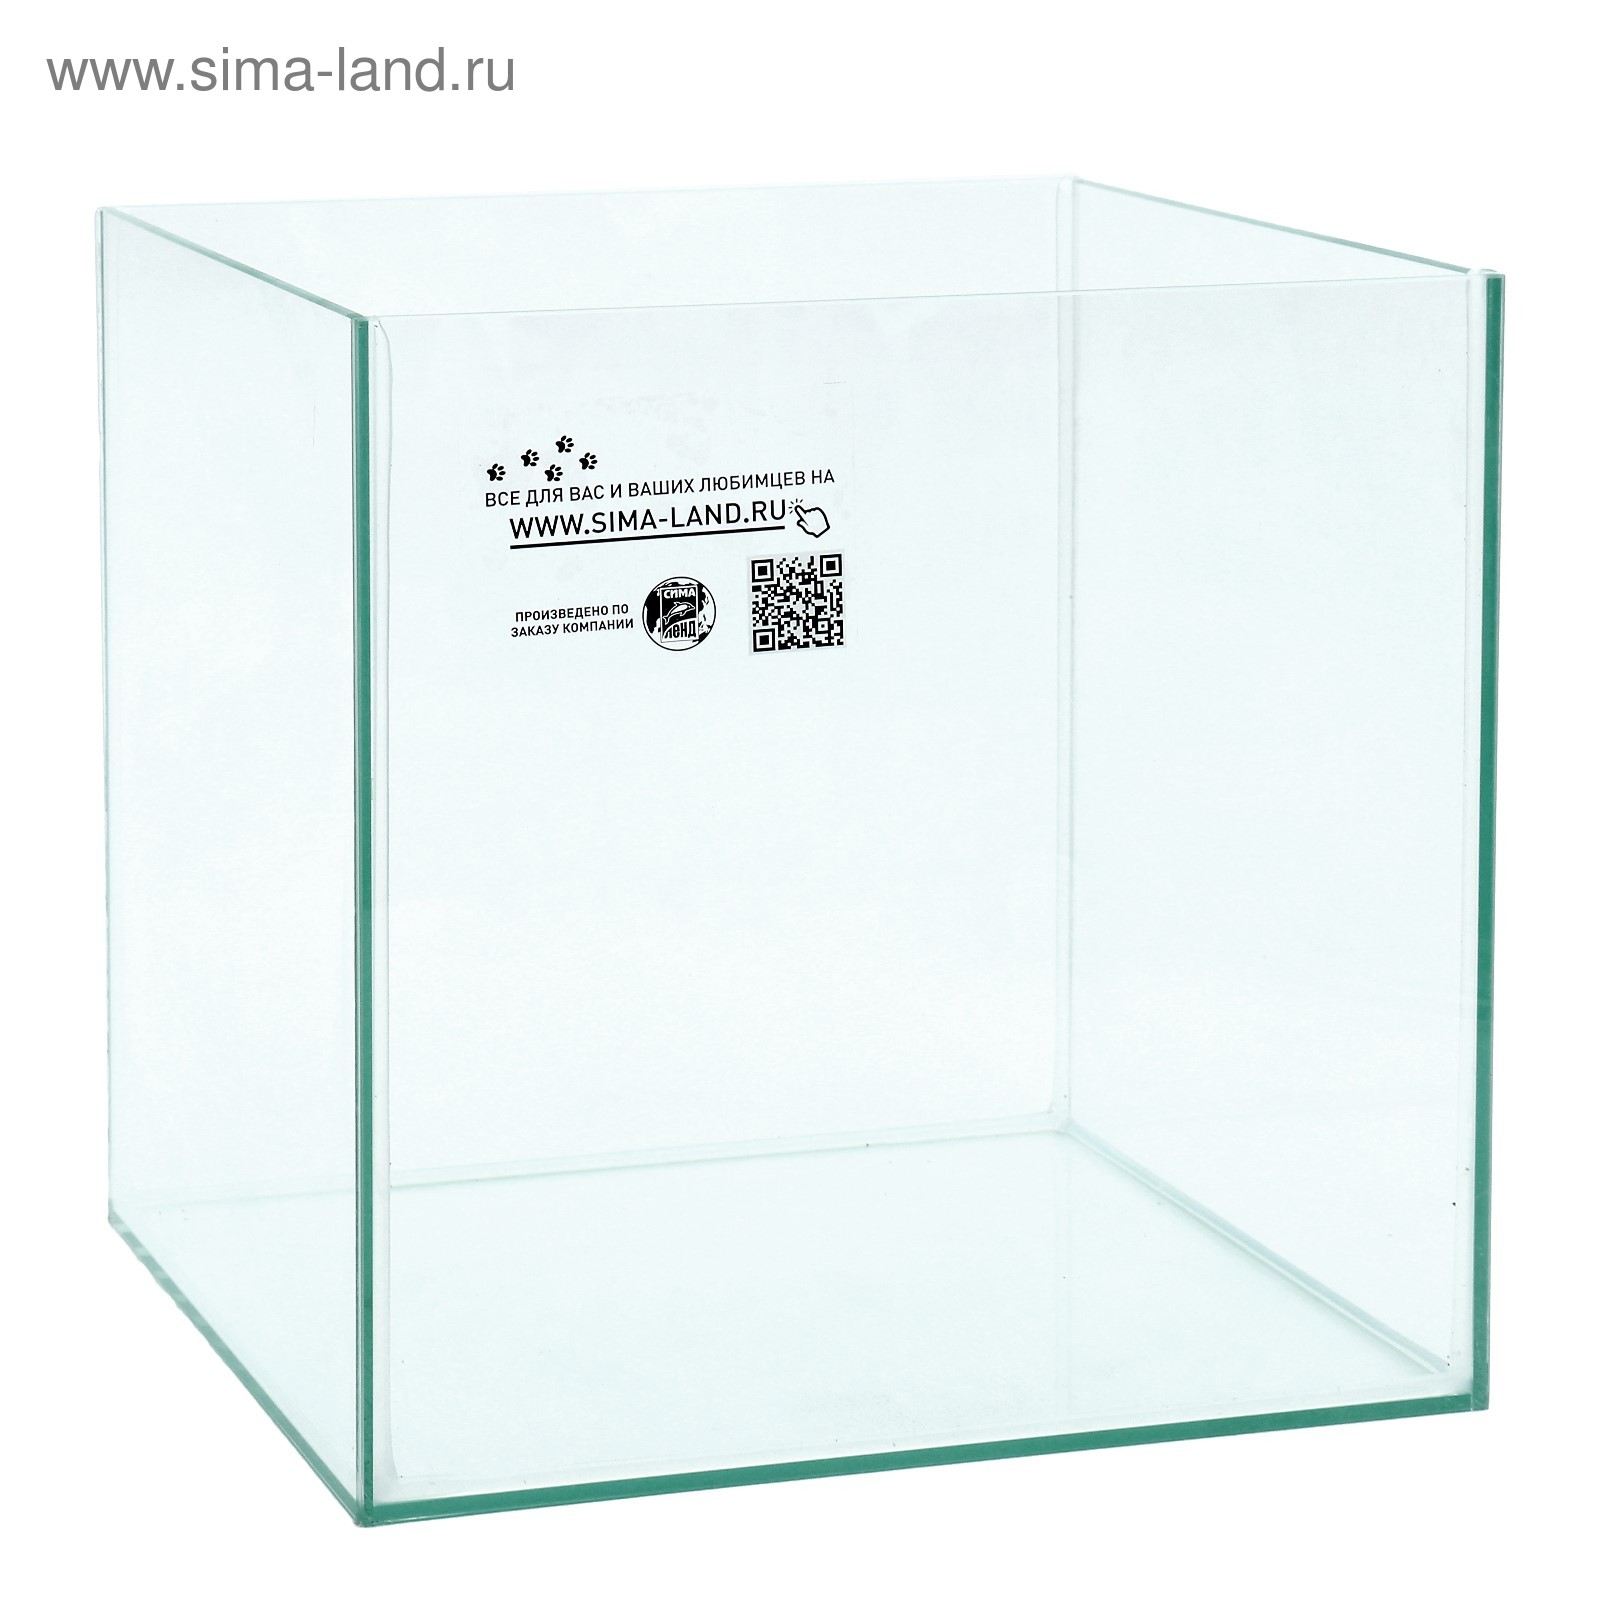 Аквариум Куб без покровного стекла, 27 литров, 30 х 30 х 30 см,  бесцветный шов (4012825) - Купить по цене от 1 390.00 руб. | Интернет  магазин SIMA-LAND.RU